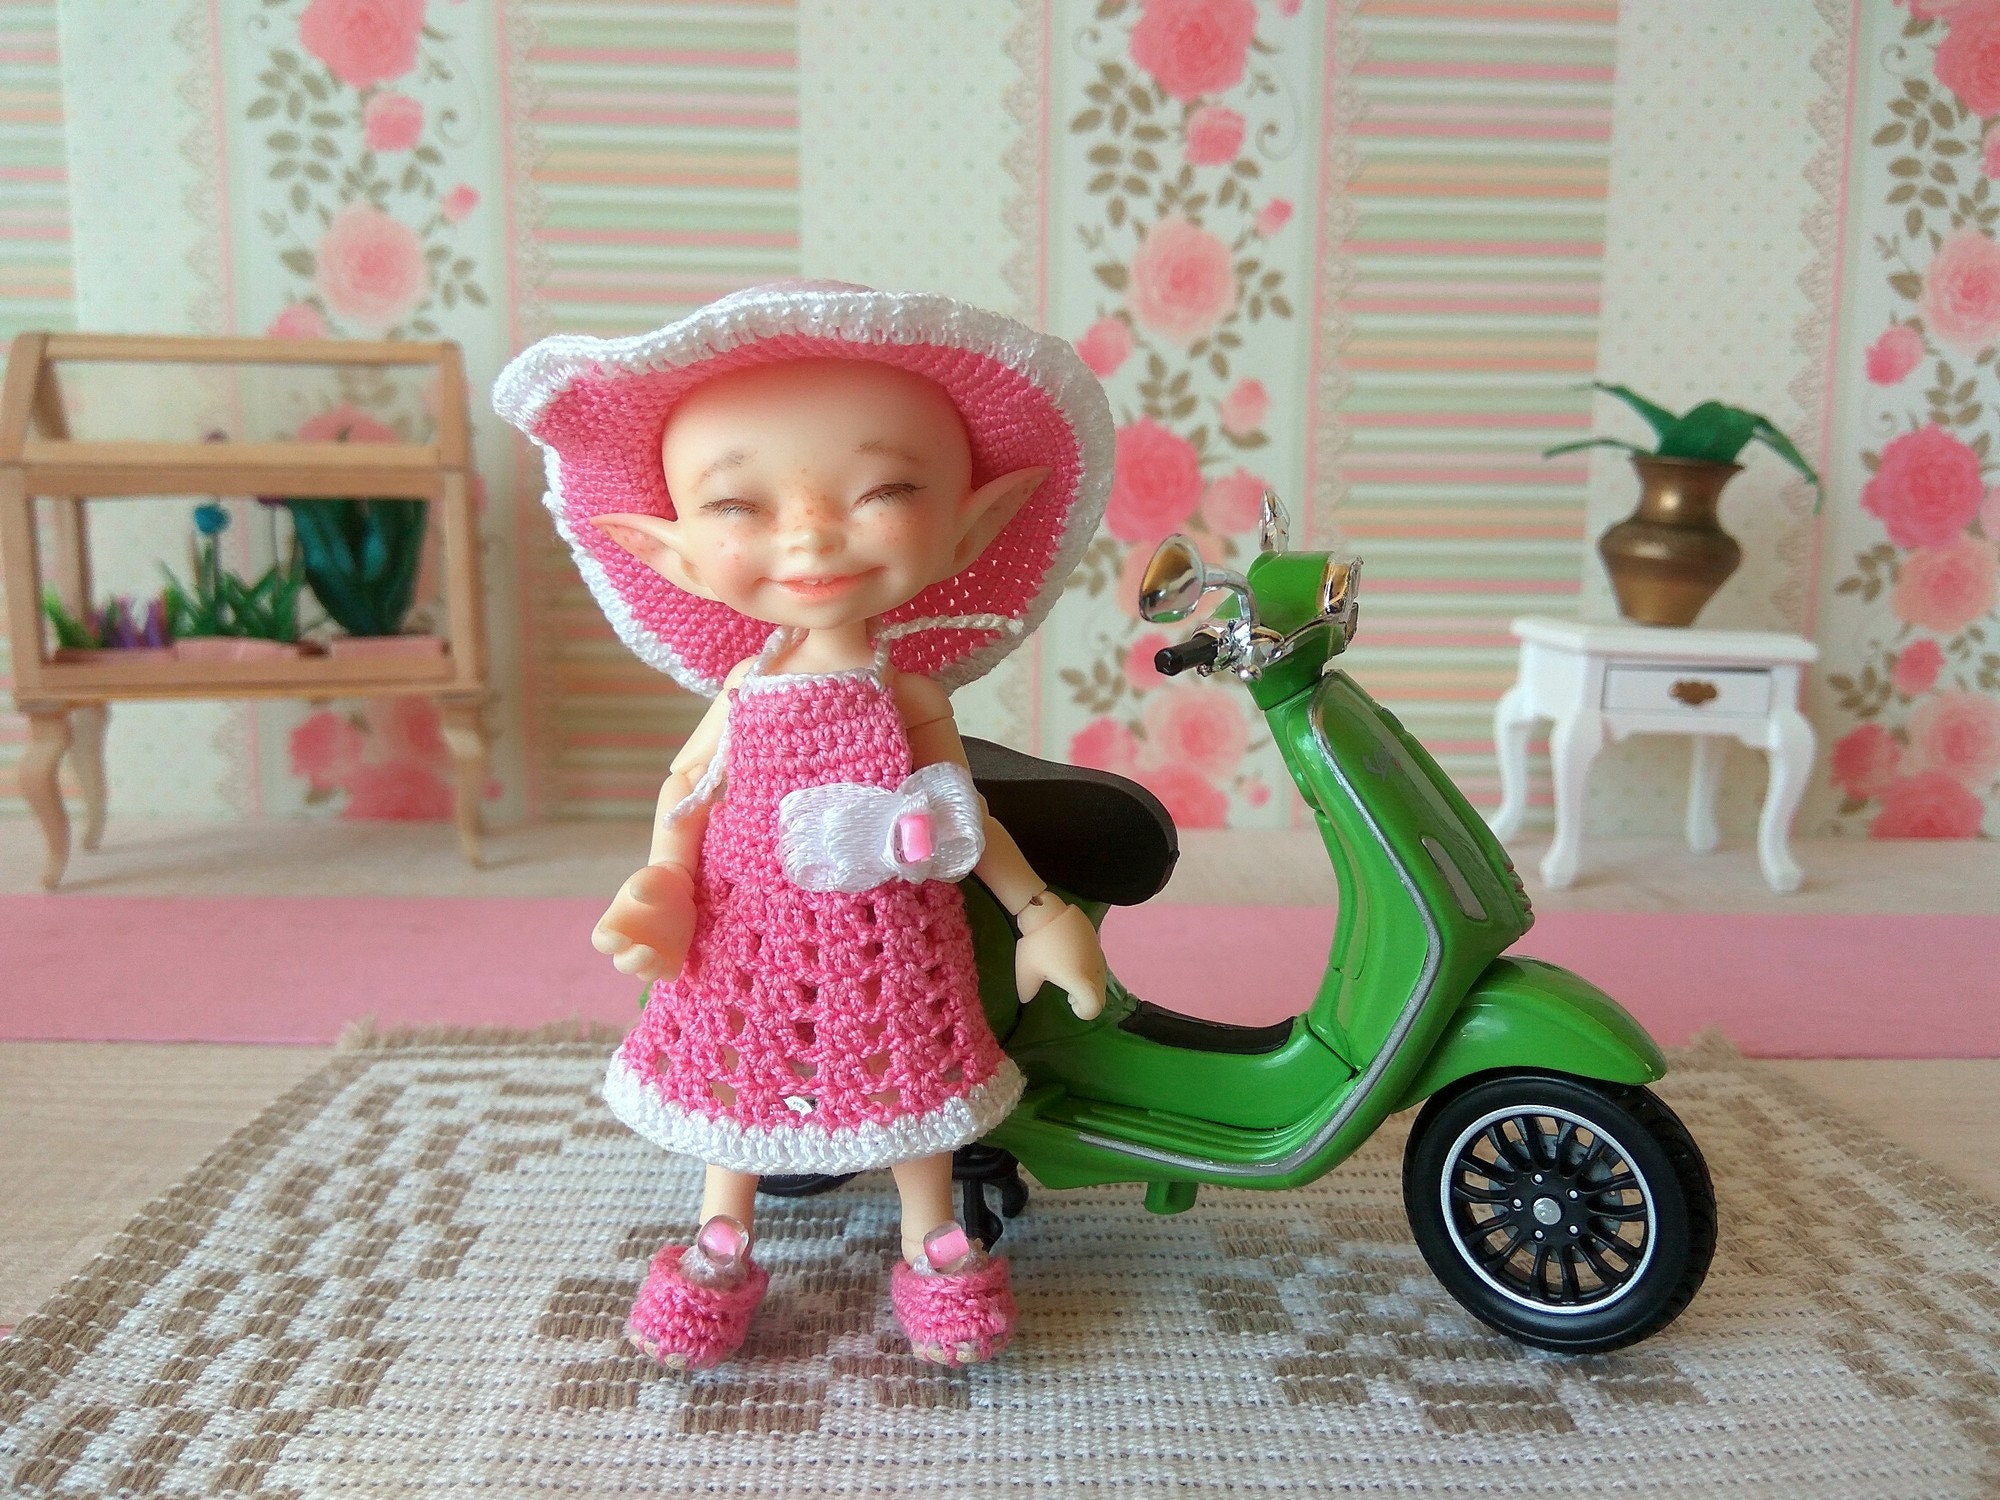 Accesorios para niños casa de muñecas motocicleta triciclo miniatura jardín de hadas muñecas 